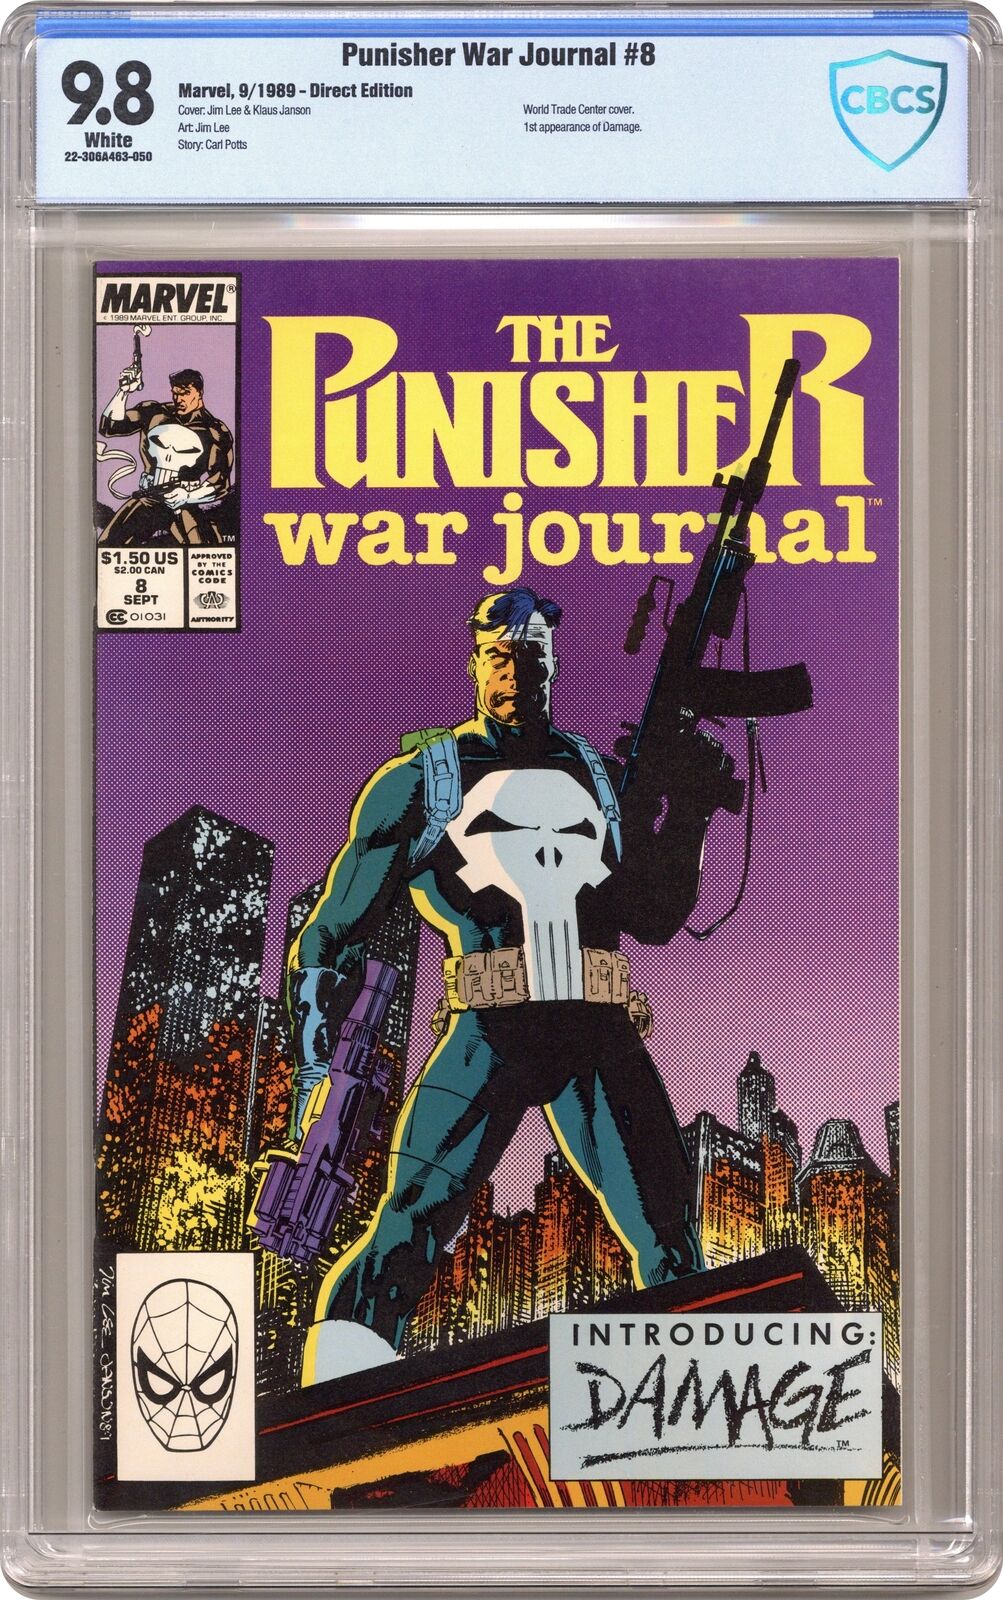 Punisher War Journal #8 CBCS 9.8 1989 22-306A463-050